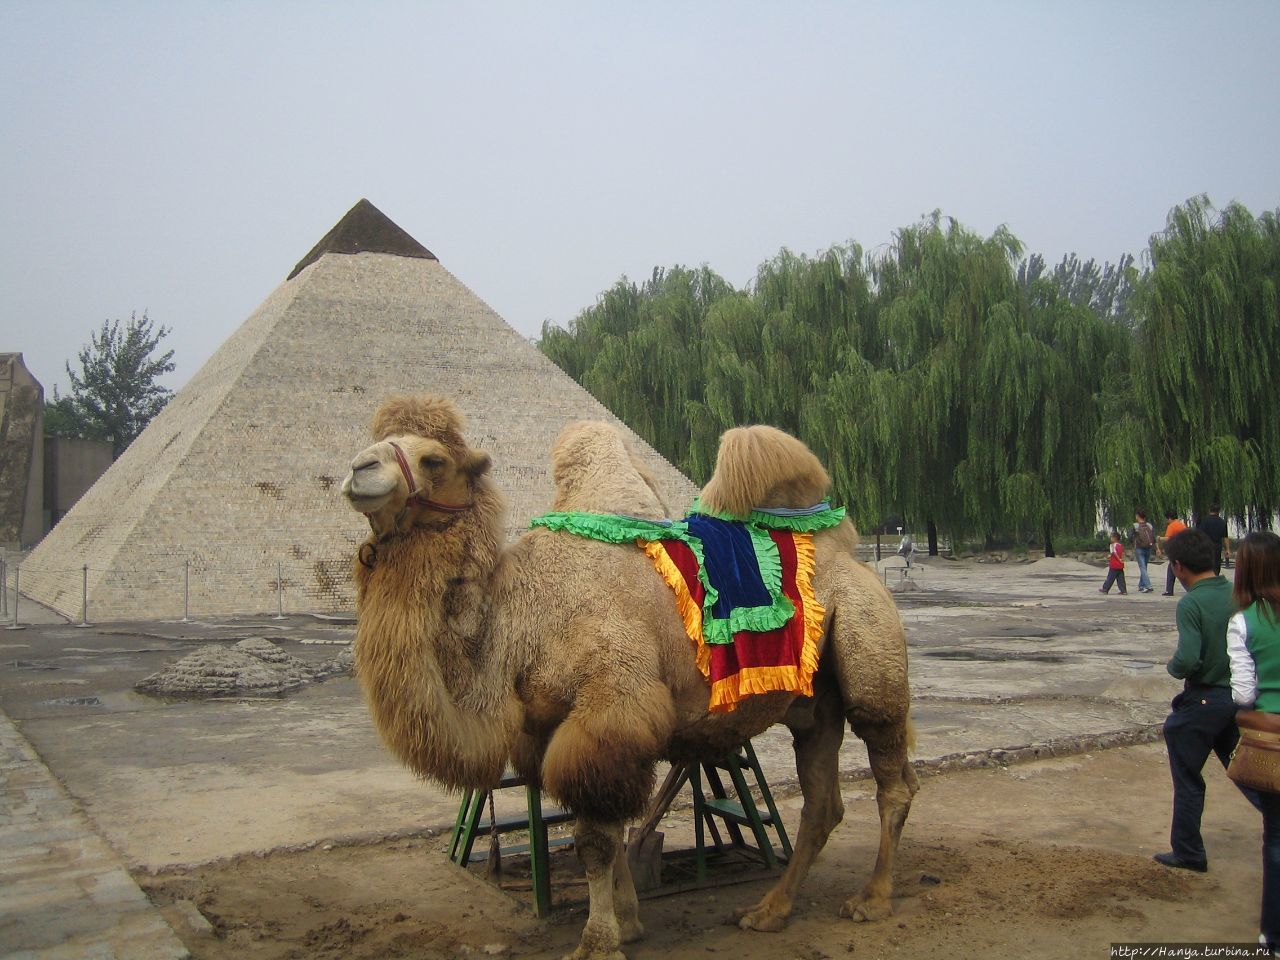 Пекин. Парк Миниатюр.Египетские пирамиды и  живой верблюд Пекин, Китай